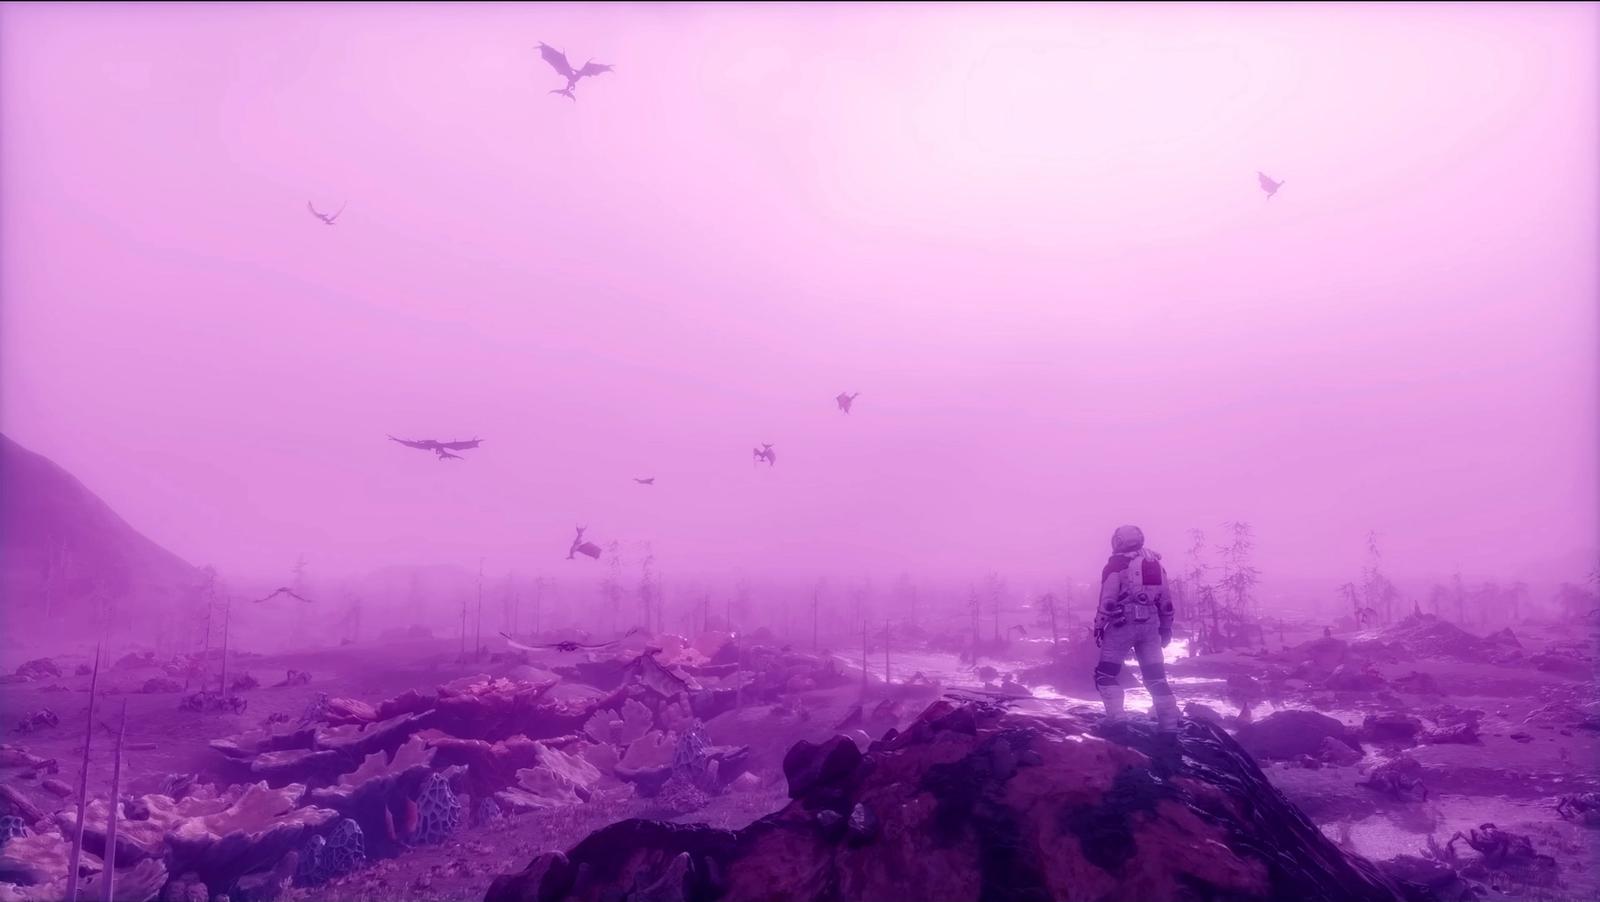 A purple lit alien world